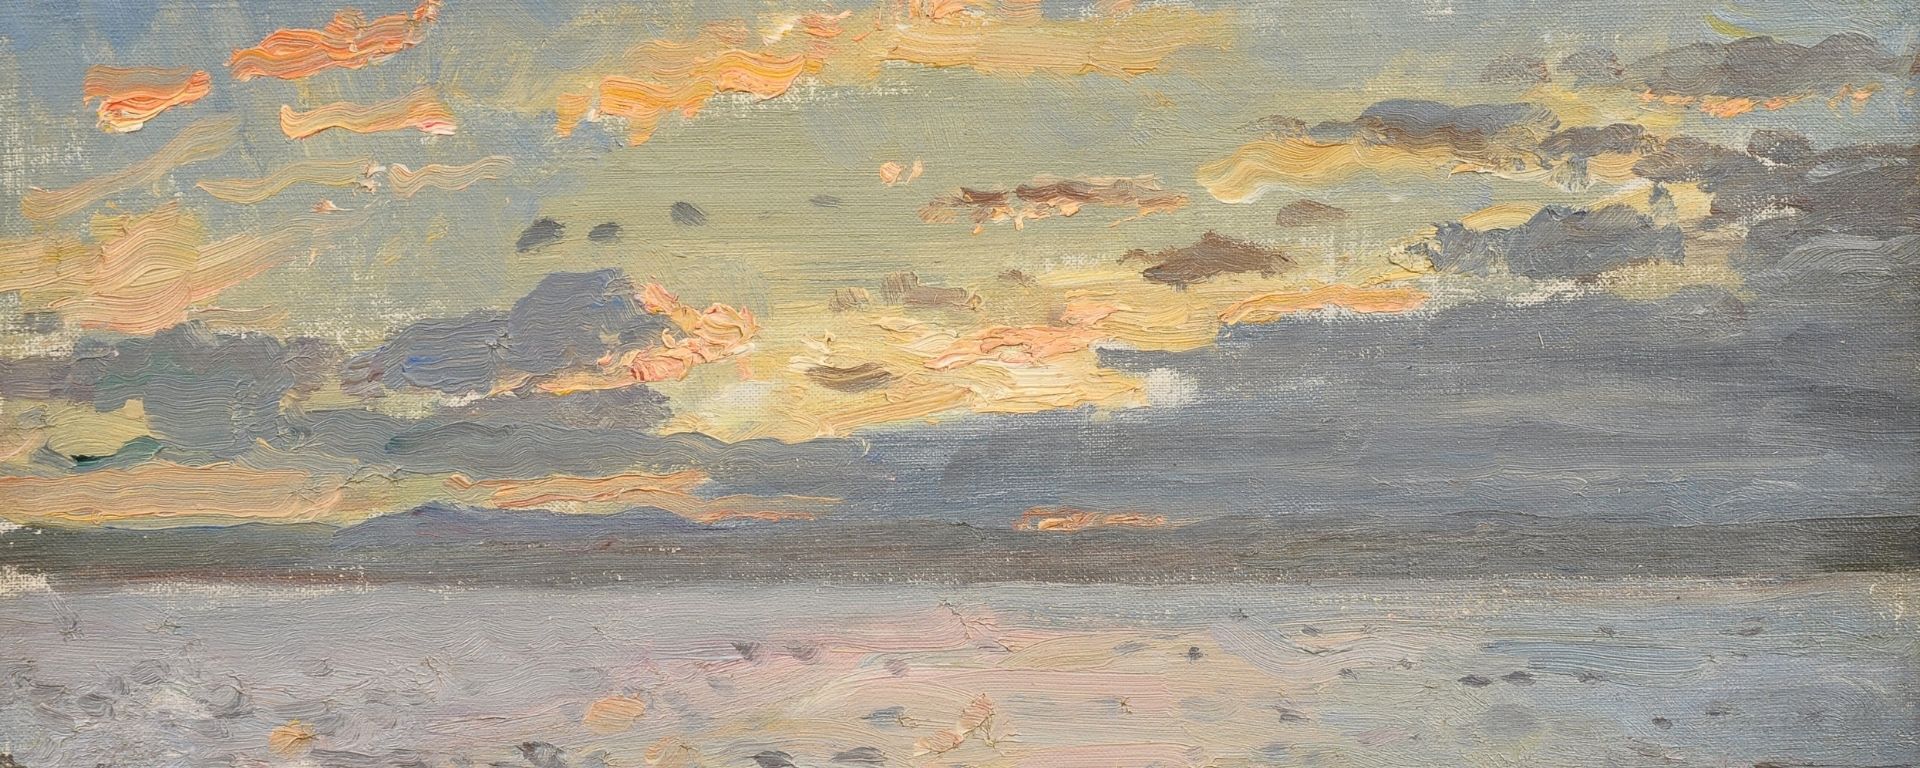 Galerie Rieck - Lauritz Tuxen - Sonnenstimmung über der schottischen See - Header